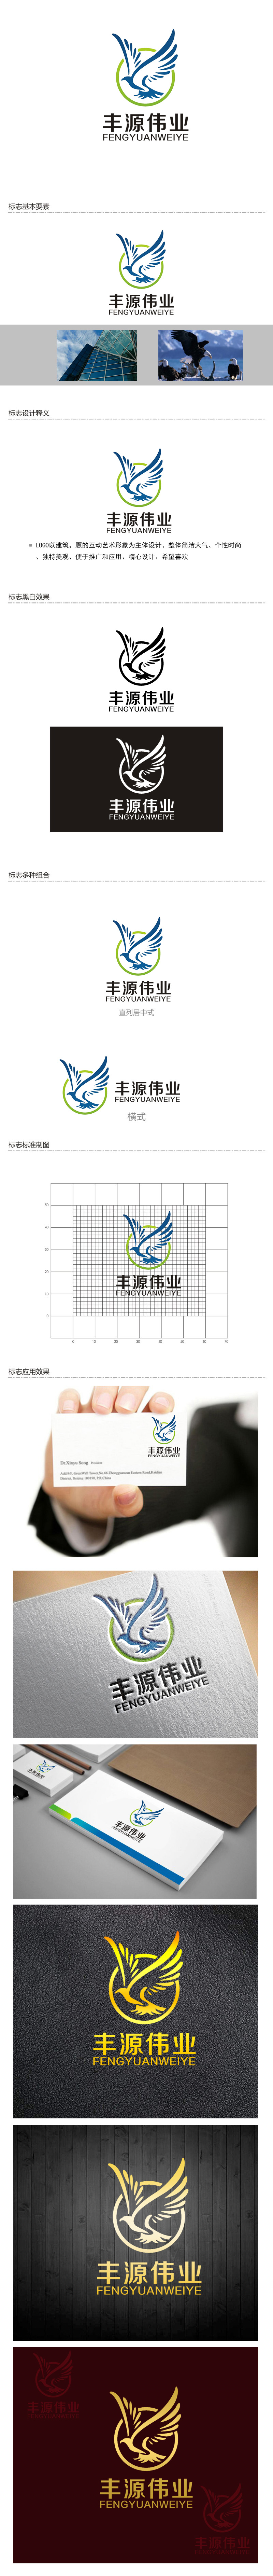 李正东的北京丰源伟业建筑装饰工程有限公司logo设计